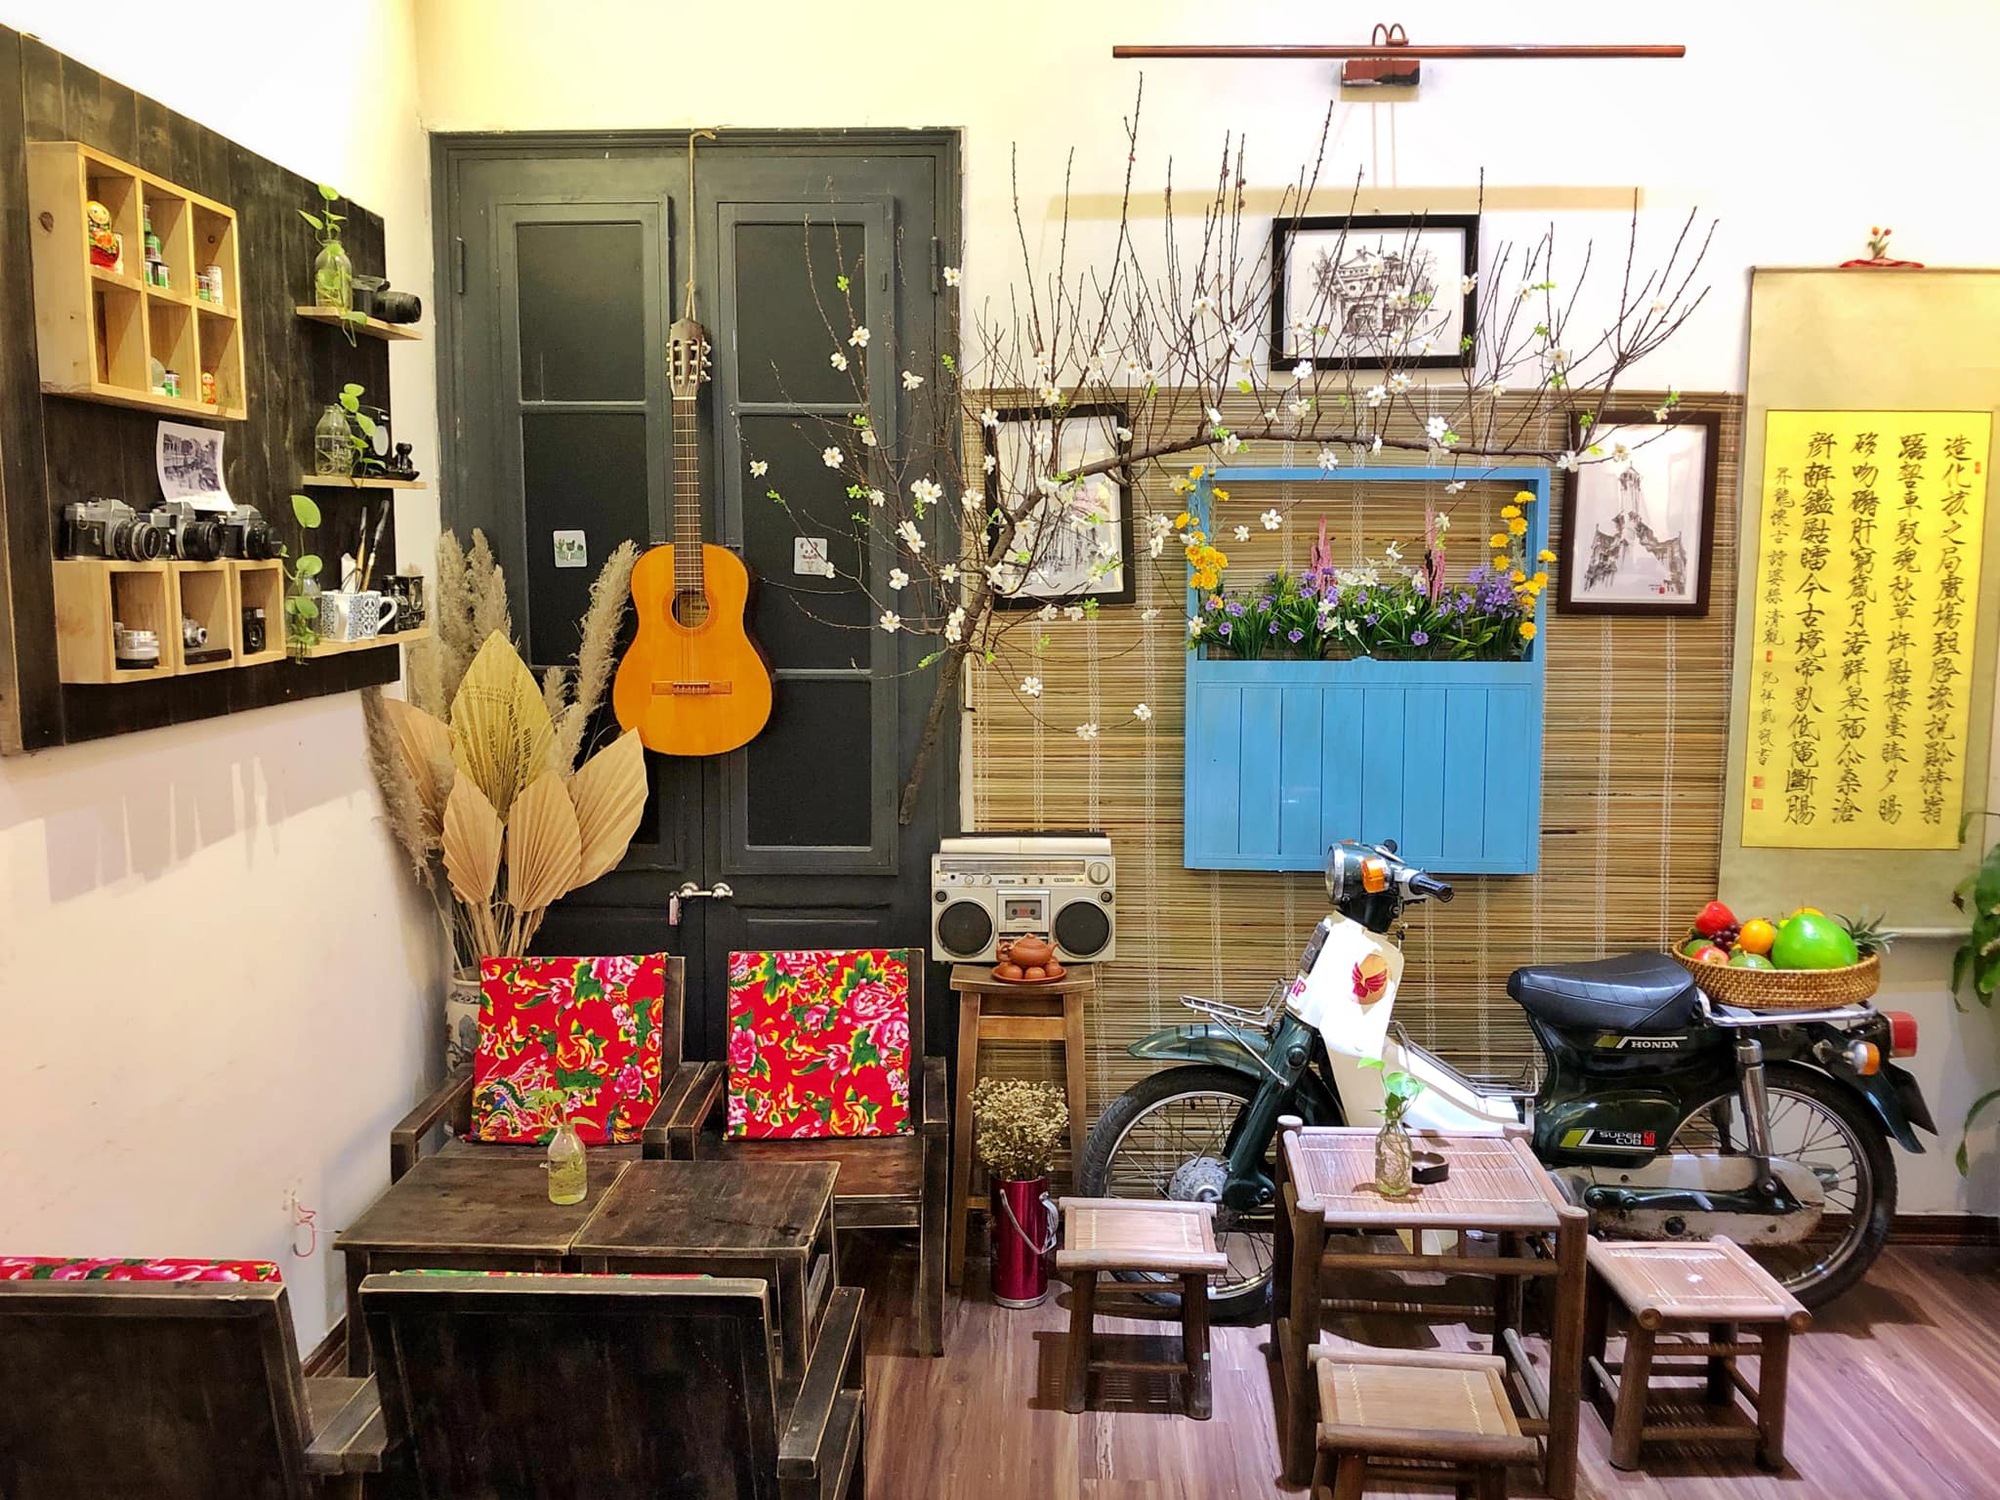 3 quán cafe view chill sóng wifi siêu khỏe ở Hà Nội - Ảnh 5.